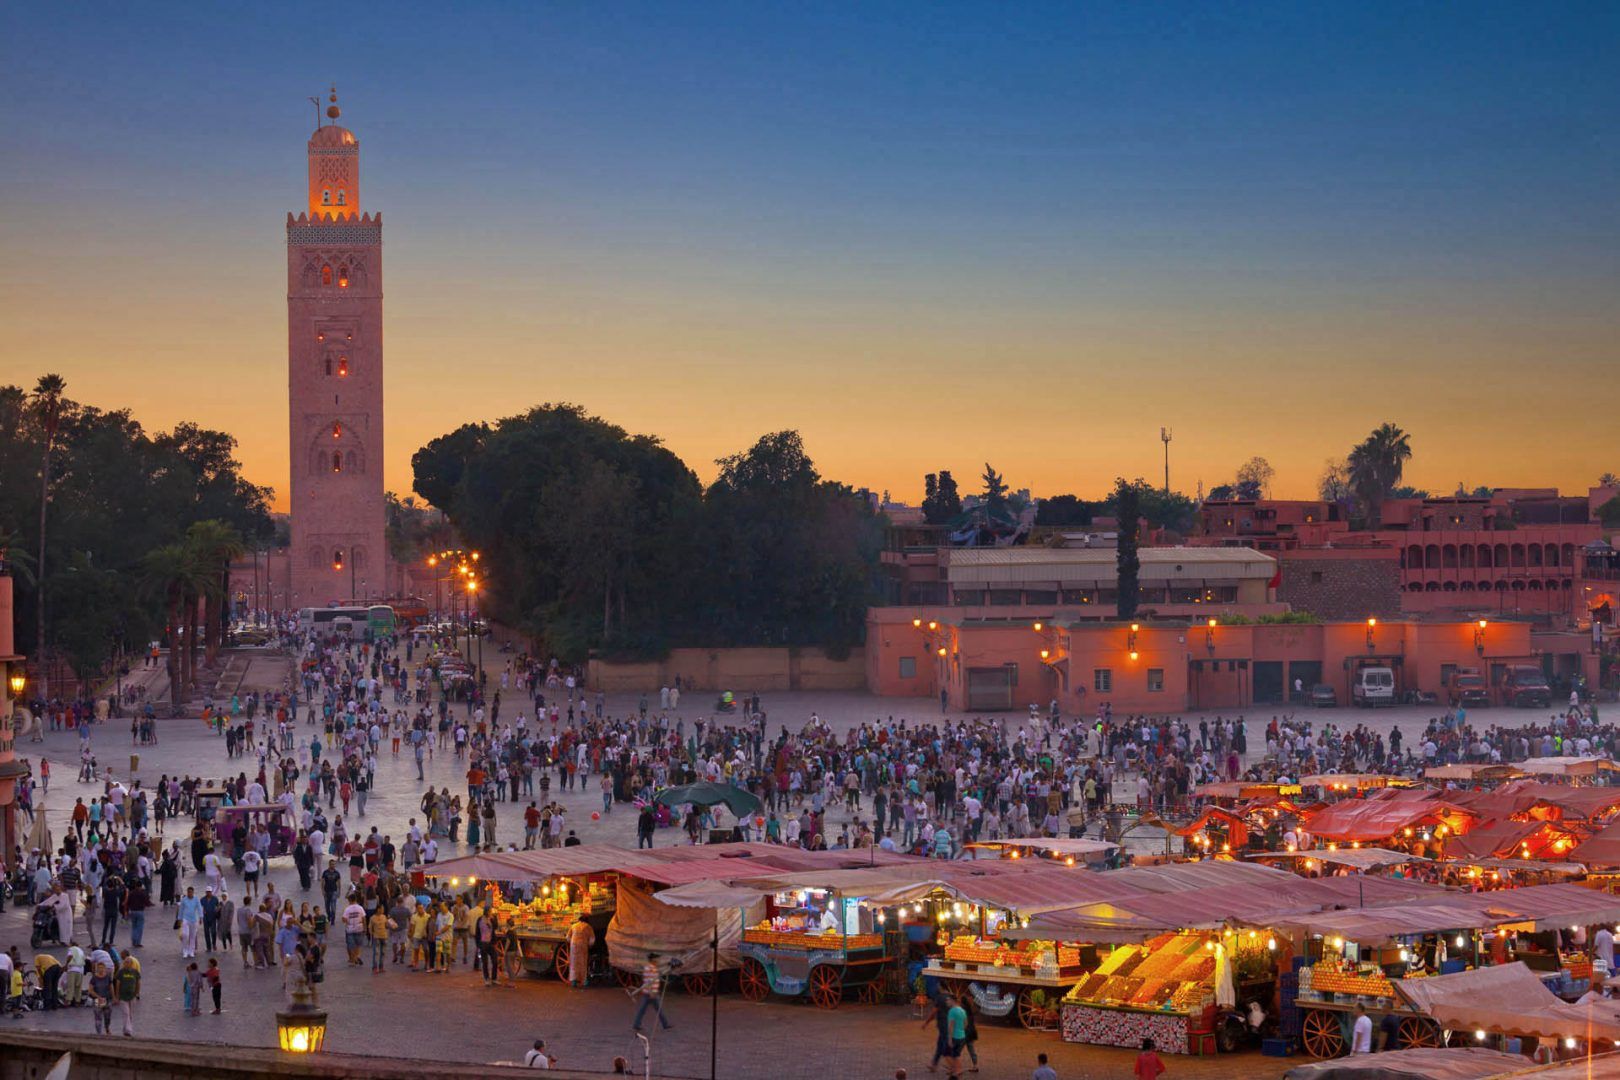 Market and Food Stalls, Djemaa el-Fna, Marrakesh, Morocco, Africa ©  Ivan Soto Cobos/Shutterstock